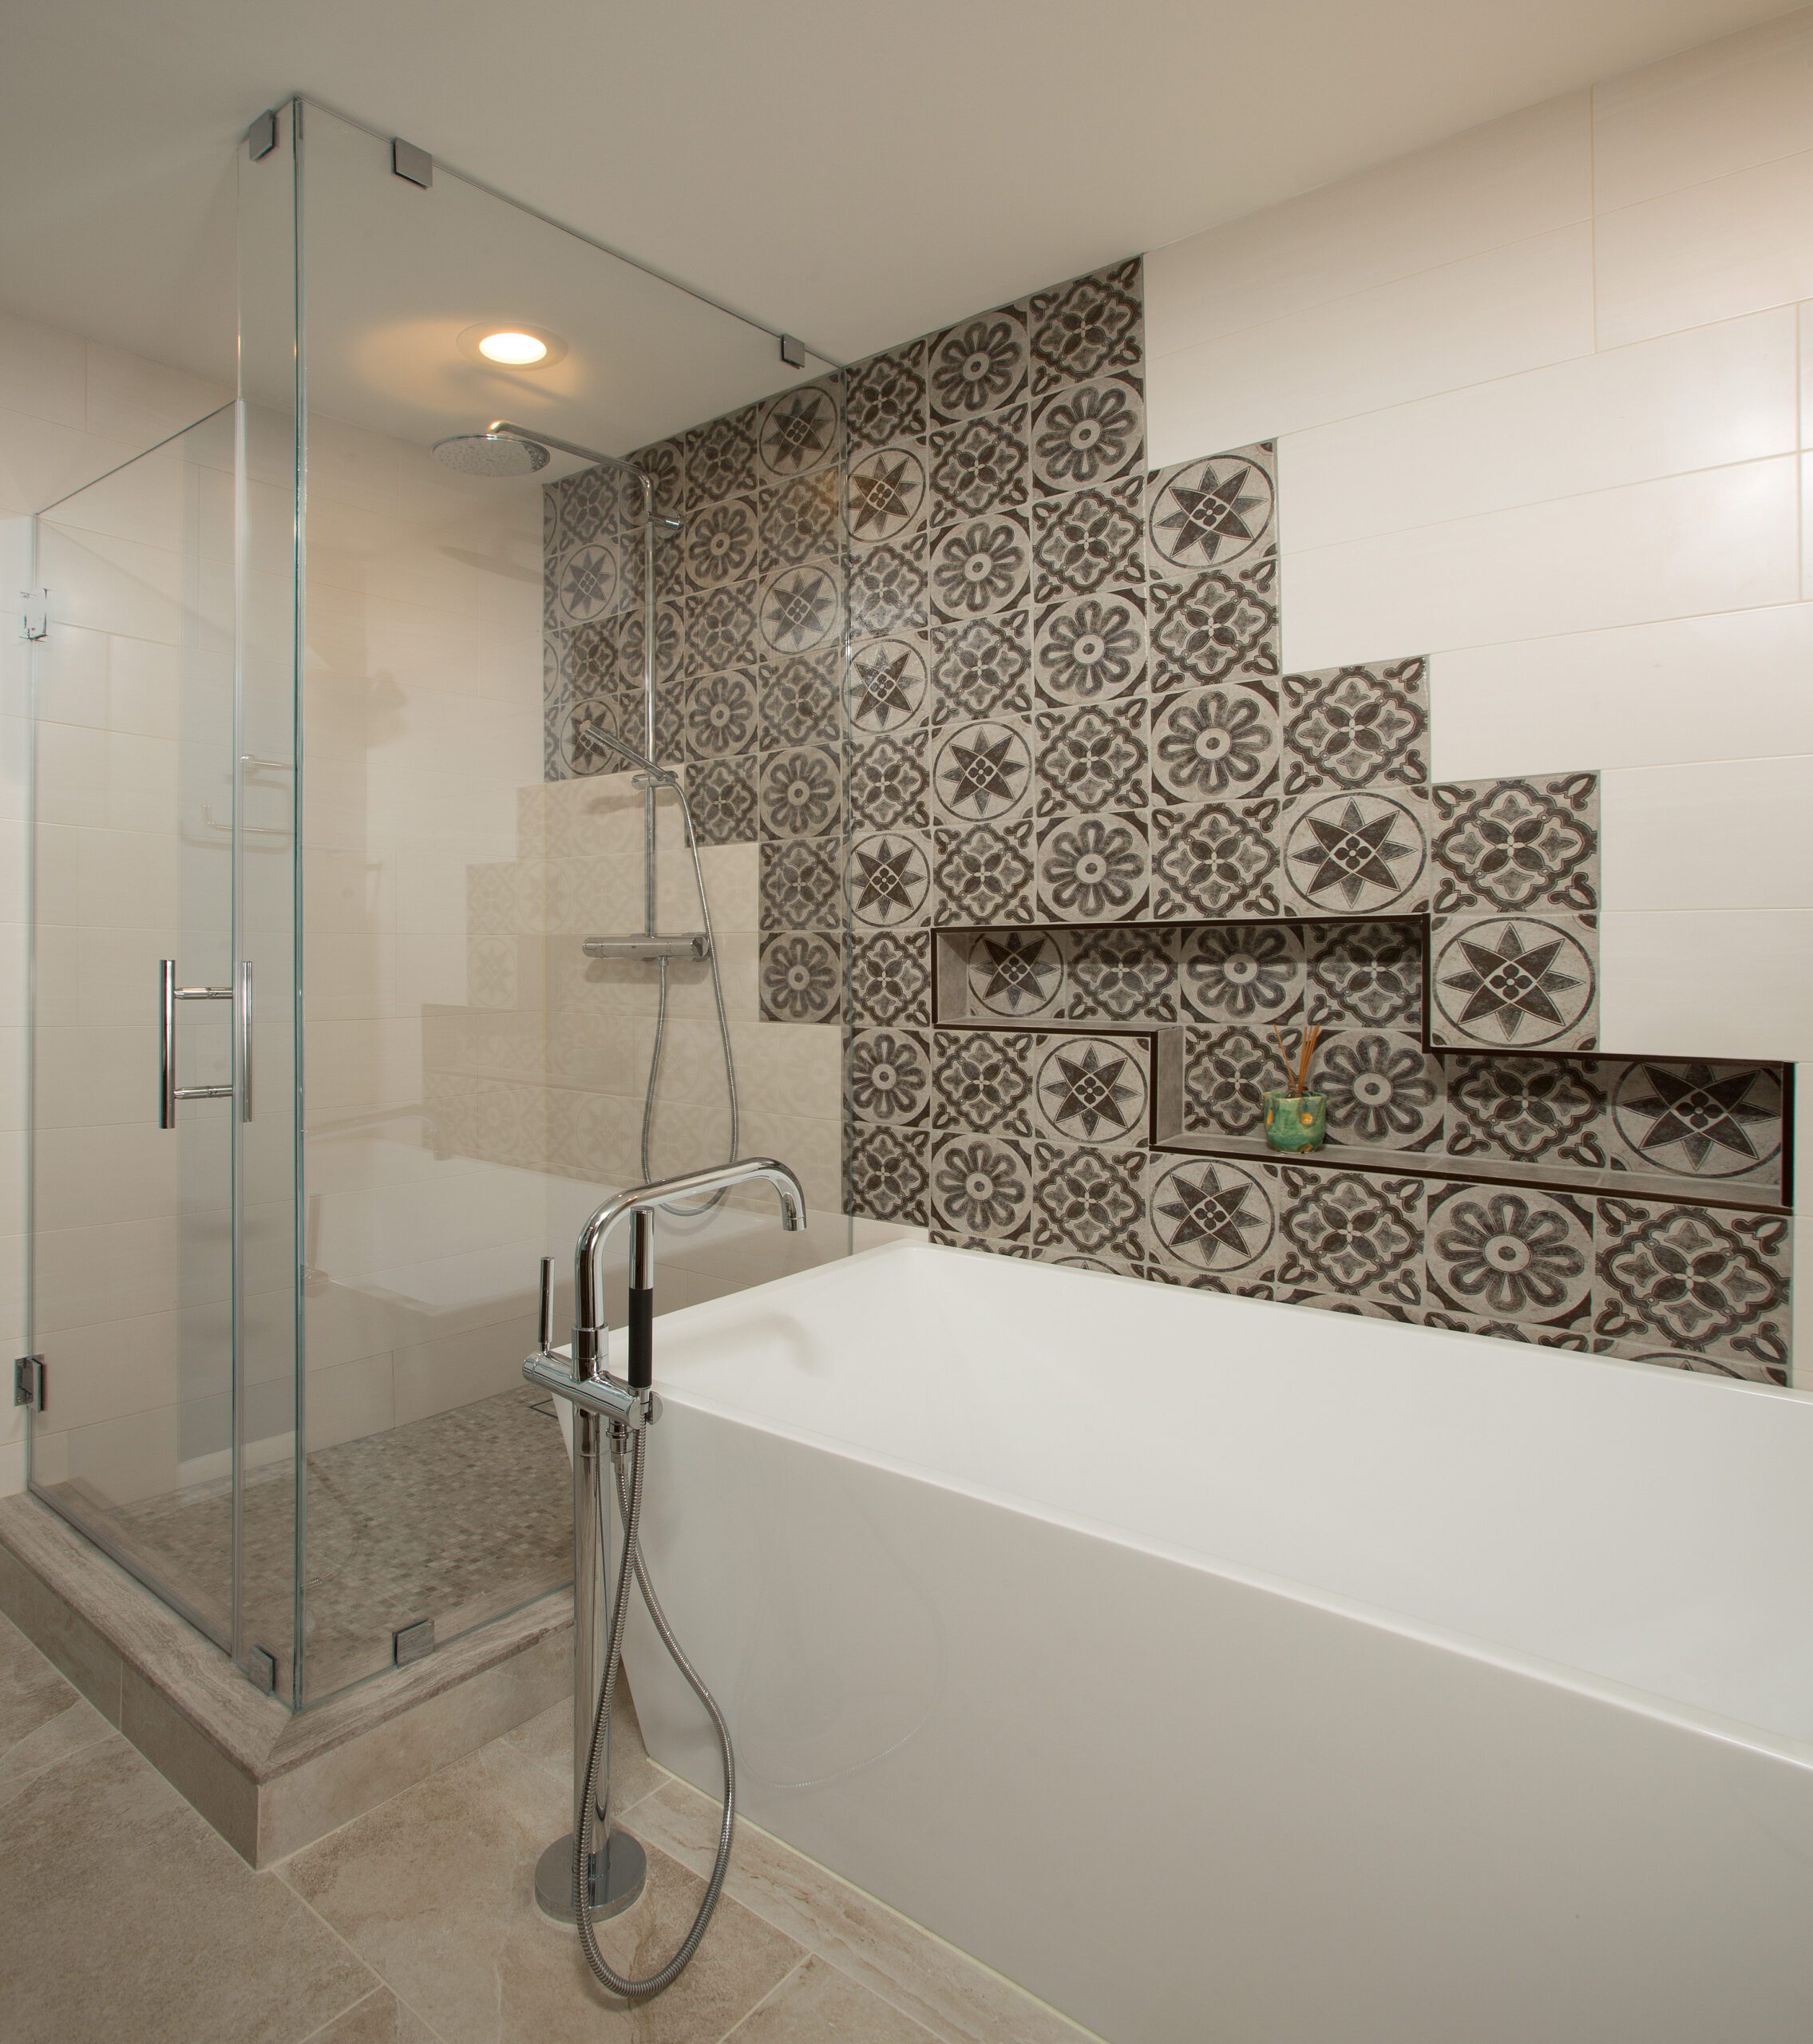 A photo of a European style modern bathroom with custom tile work